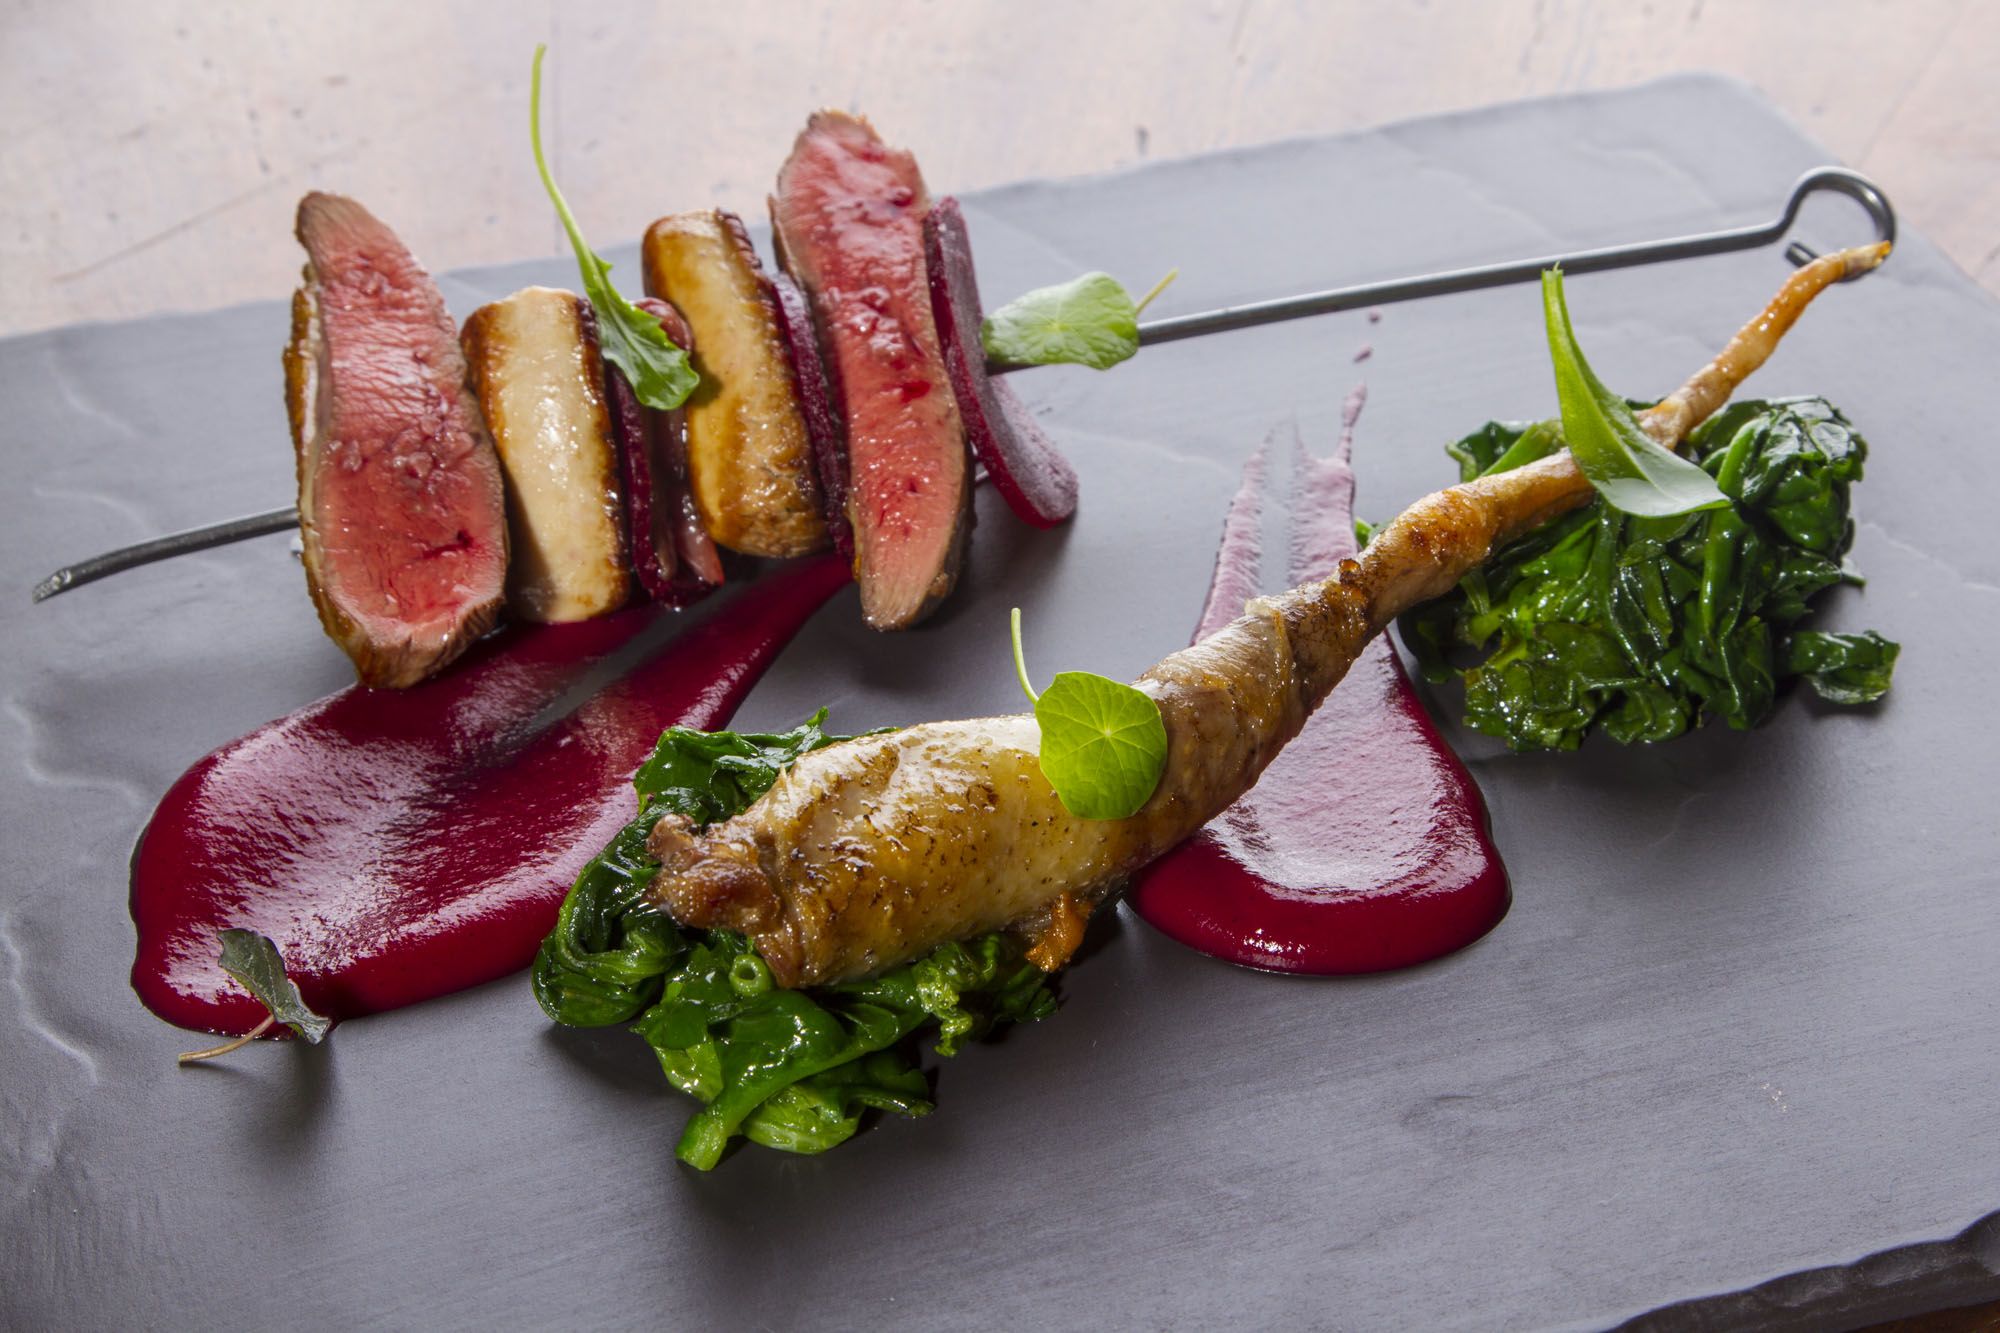 Piccione allo spiedo, foie gras, spinaci e rapa rossa alla grappa